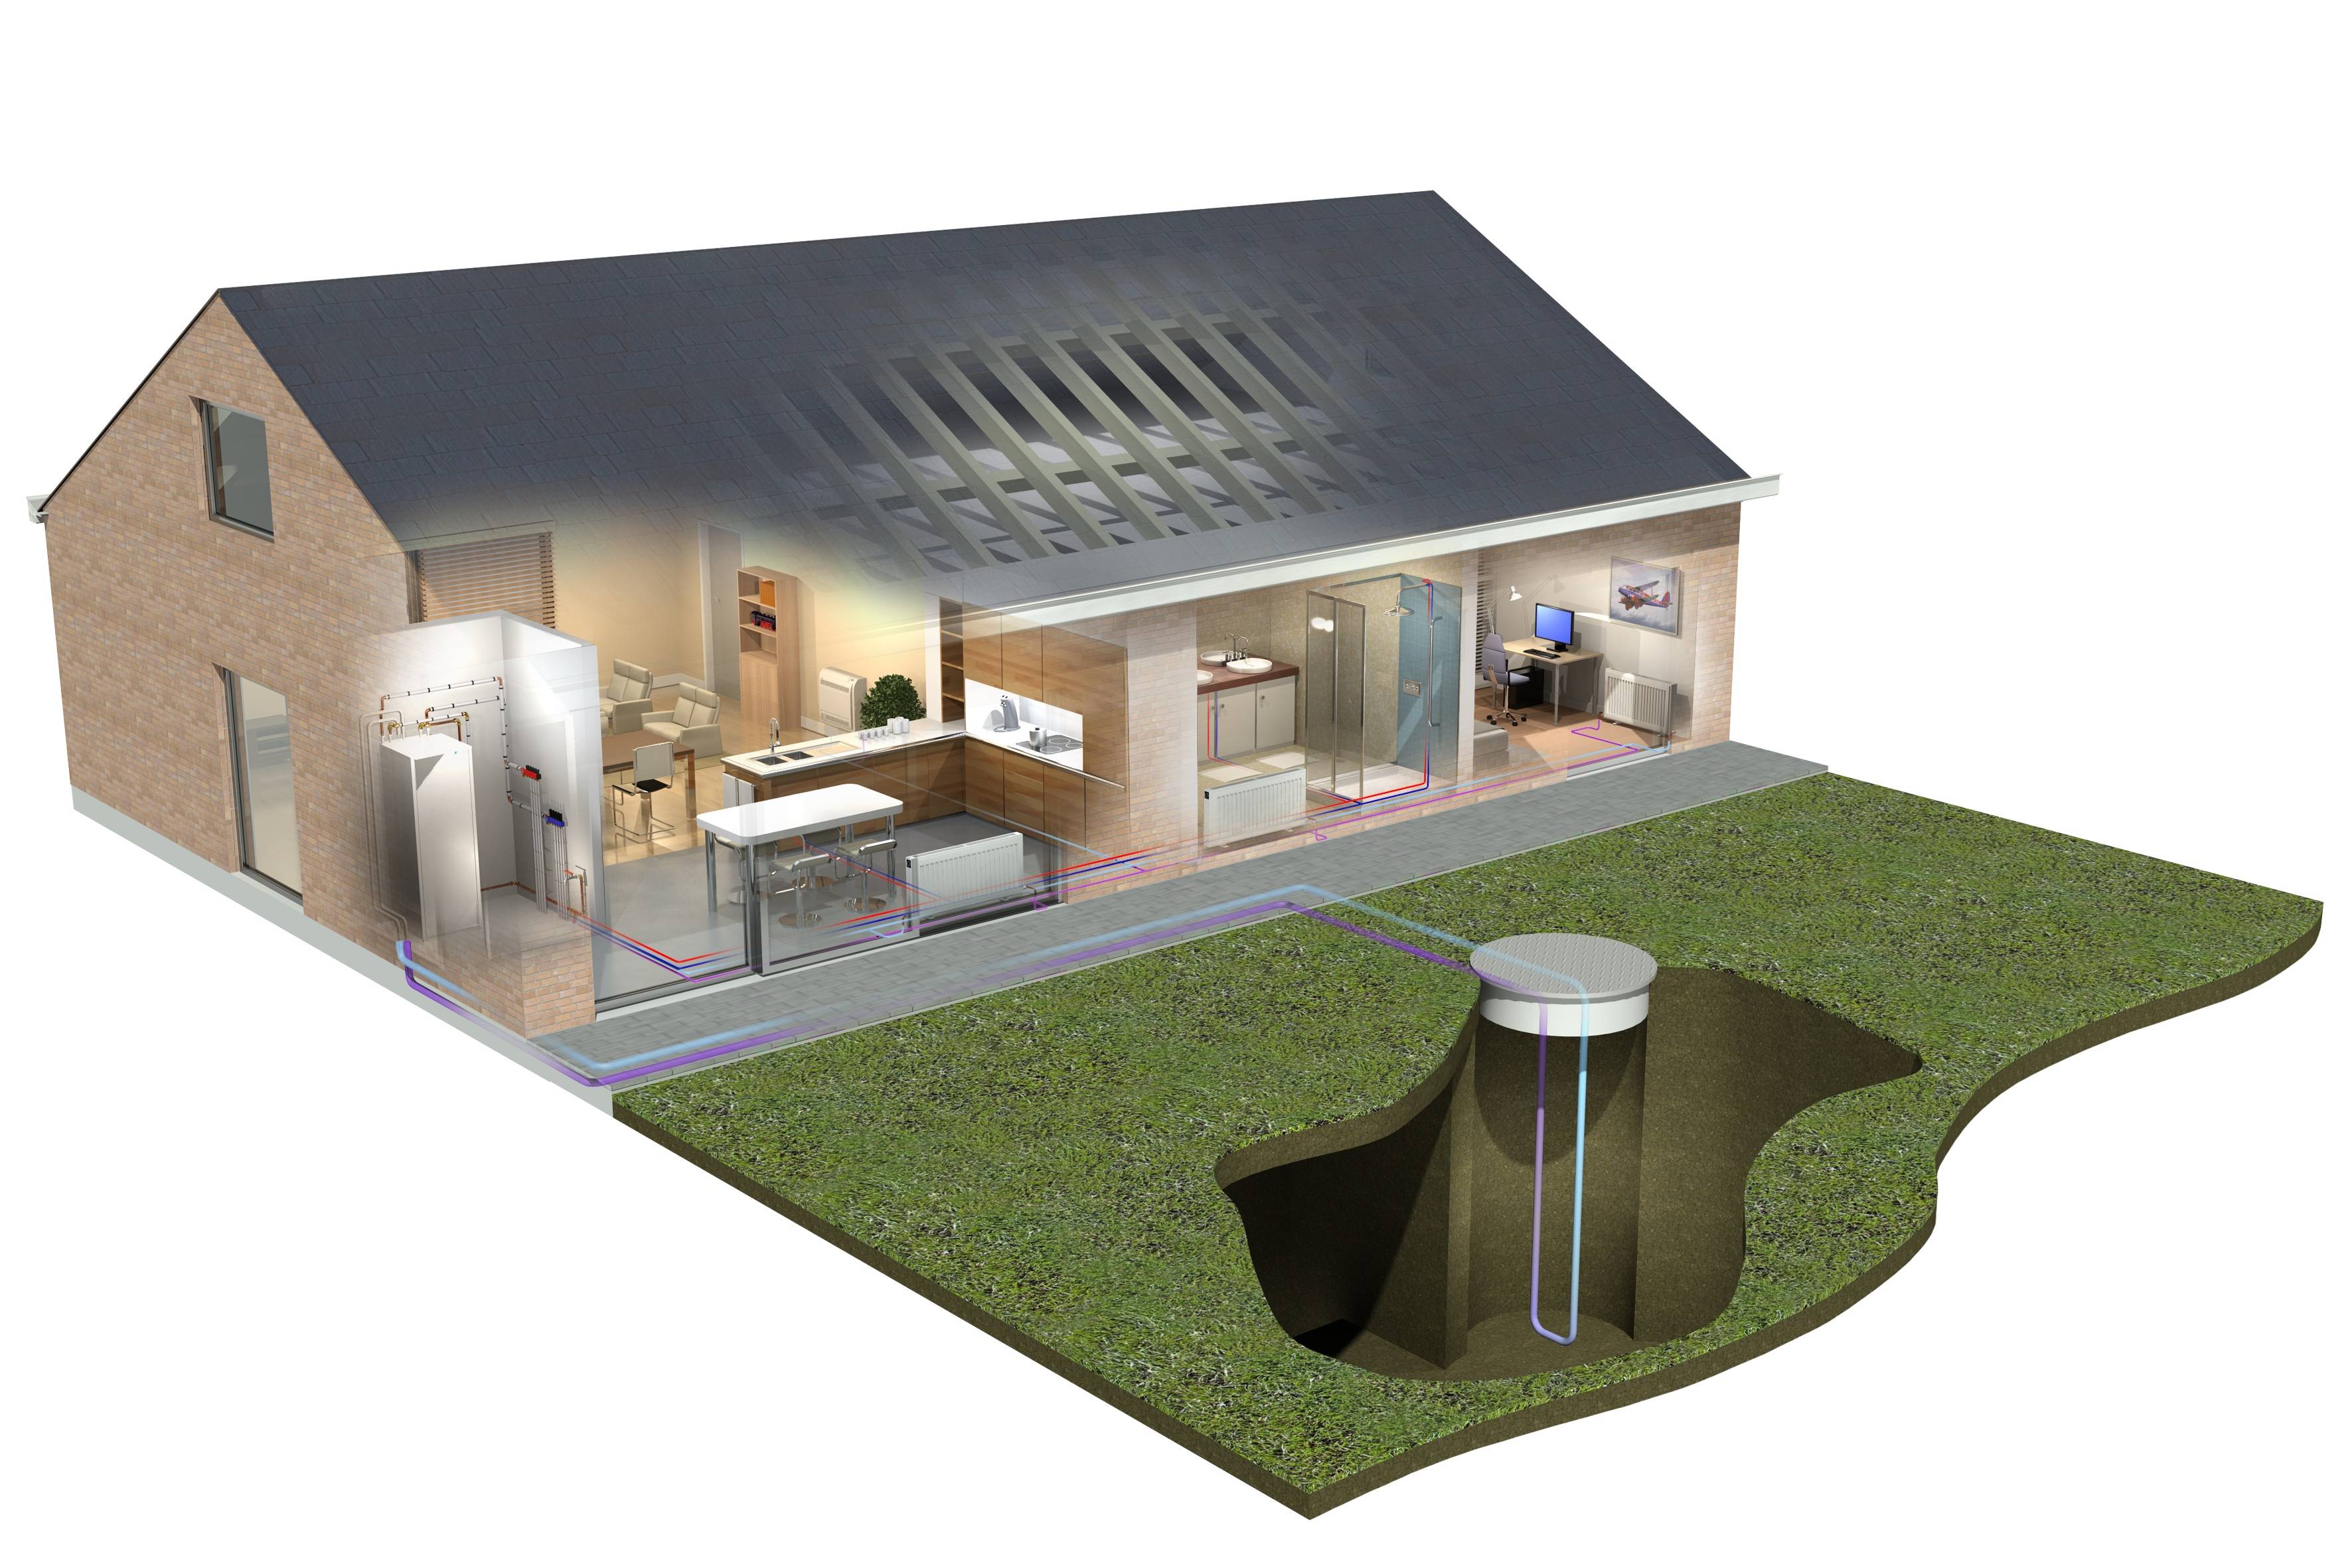 Альтернативное отопление для частного дома: виды источников, способы установки системы в жилище своими руками, схемы